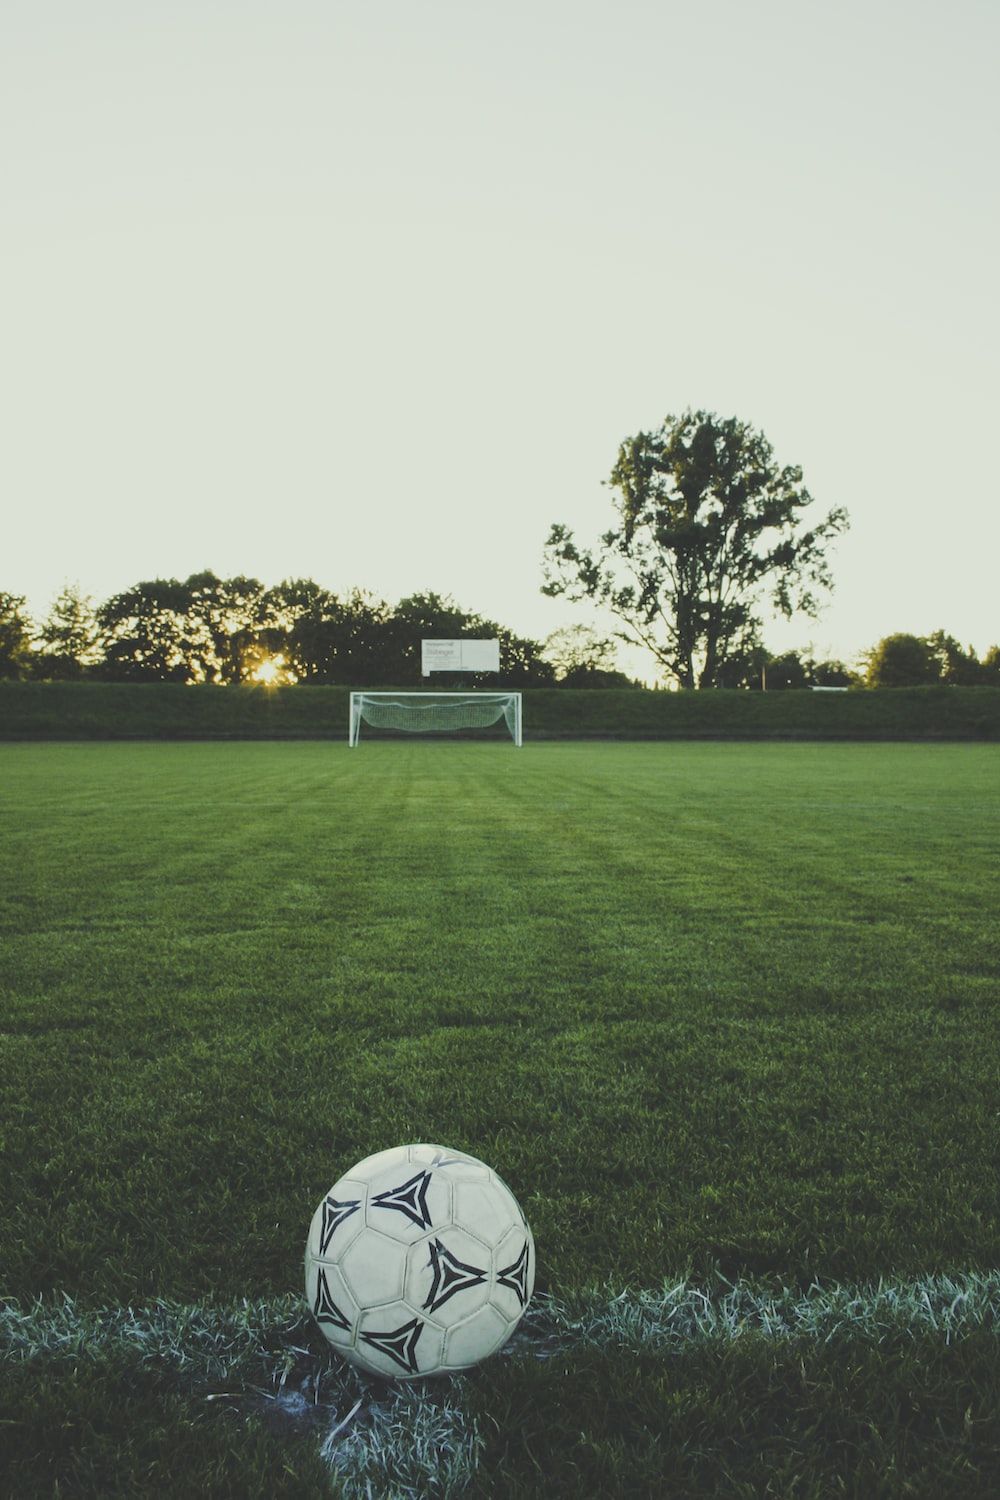 Soccer ball on the field - Soccer